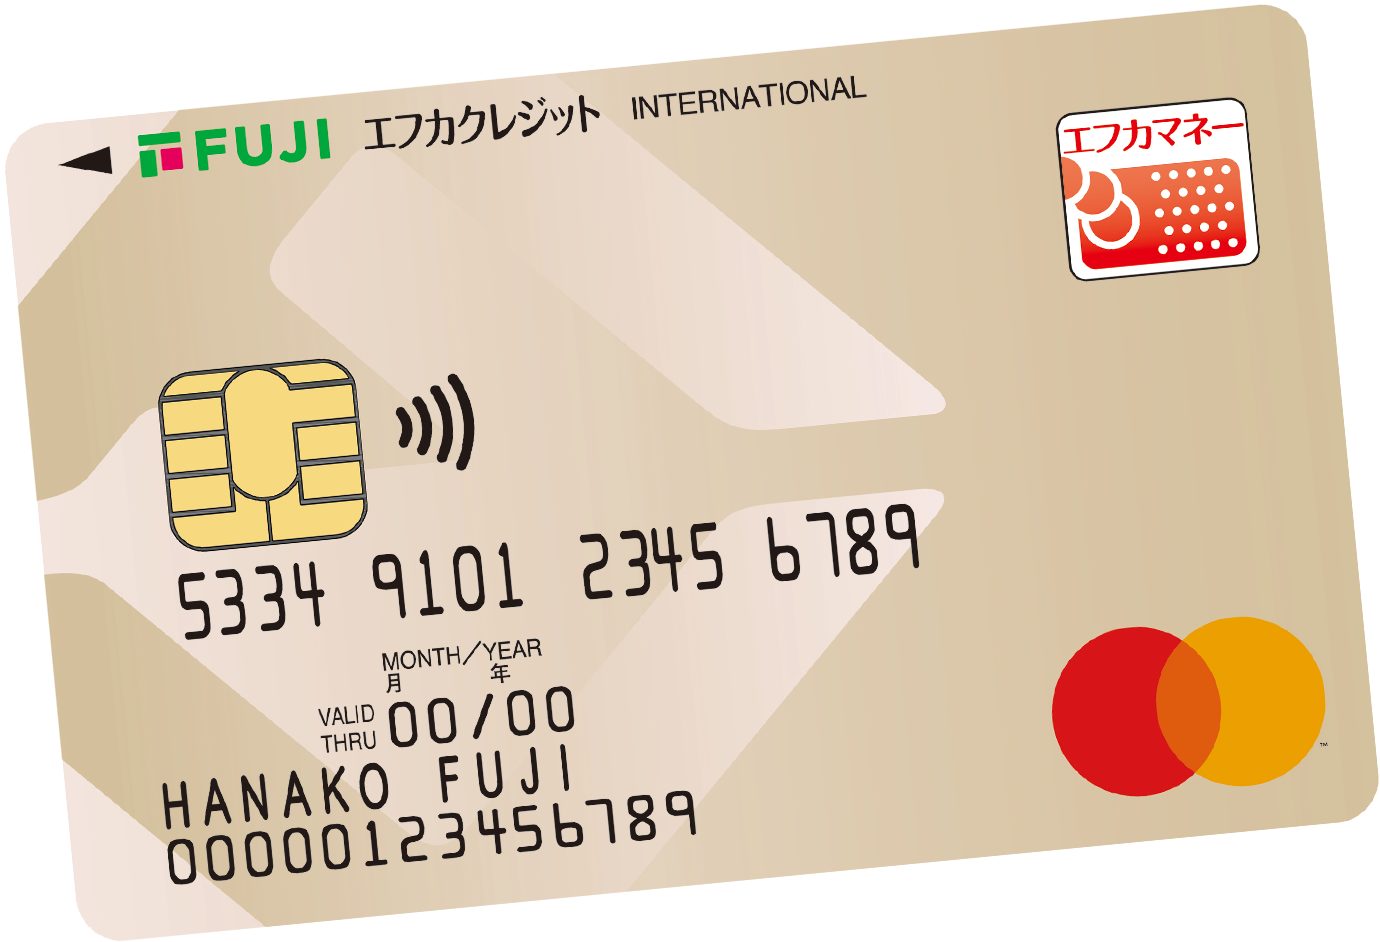 エフカクレジットカードMastercard